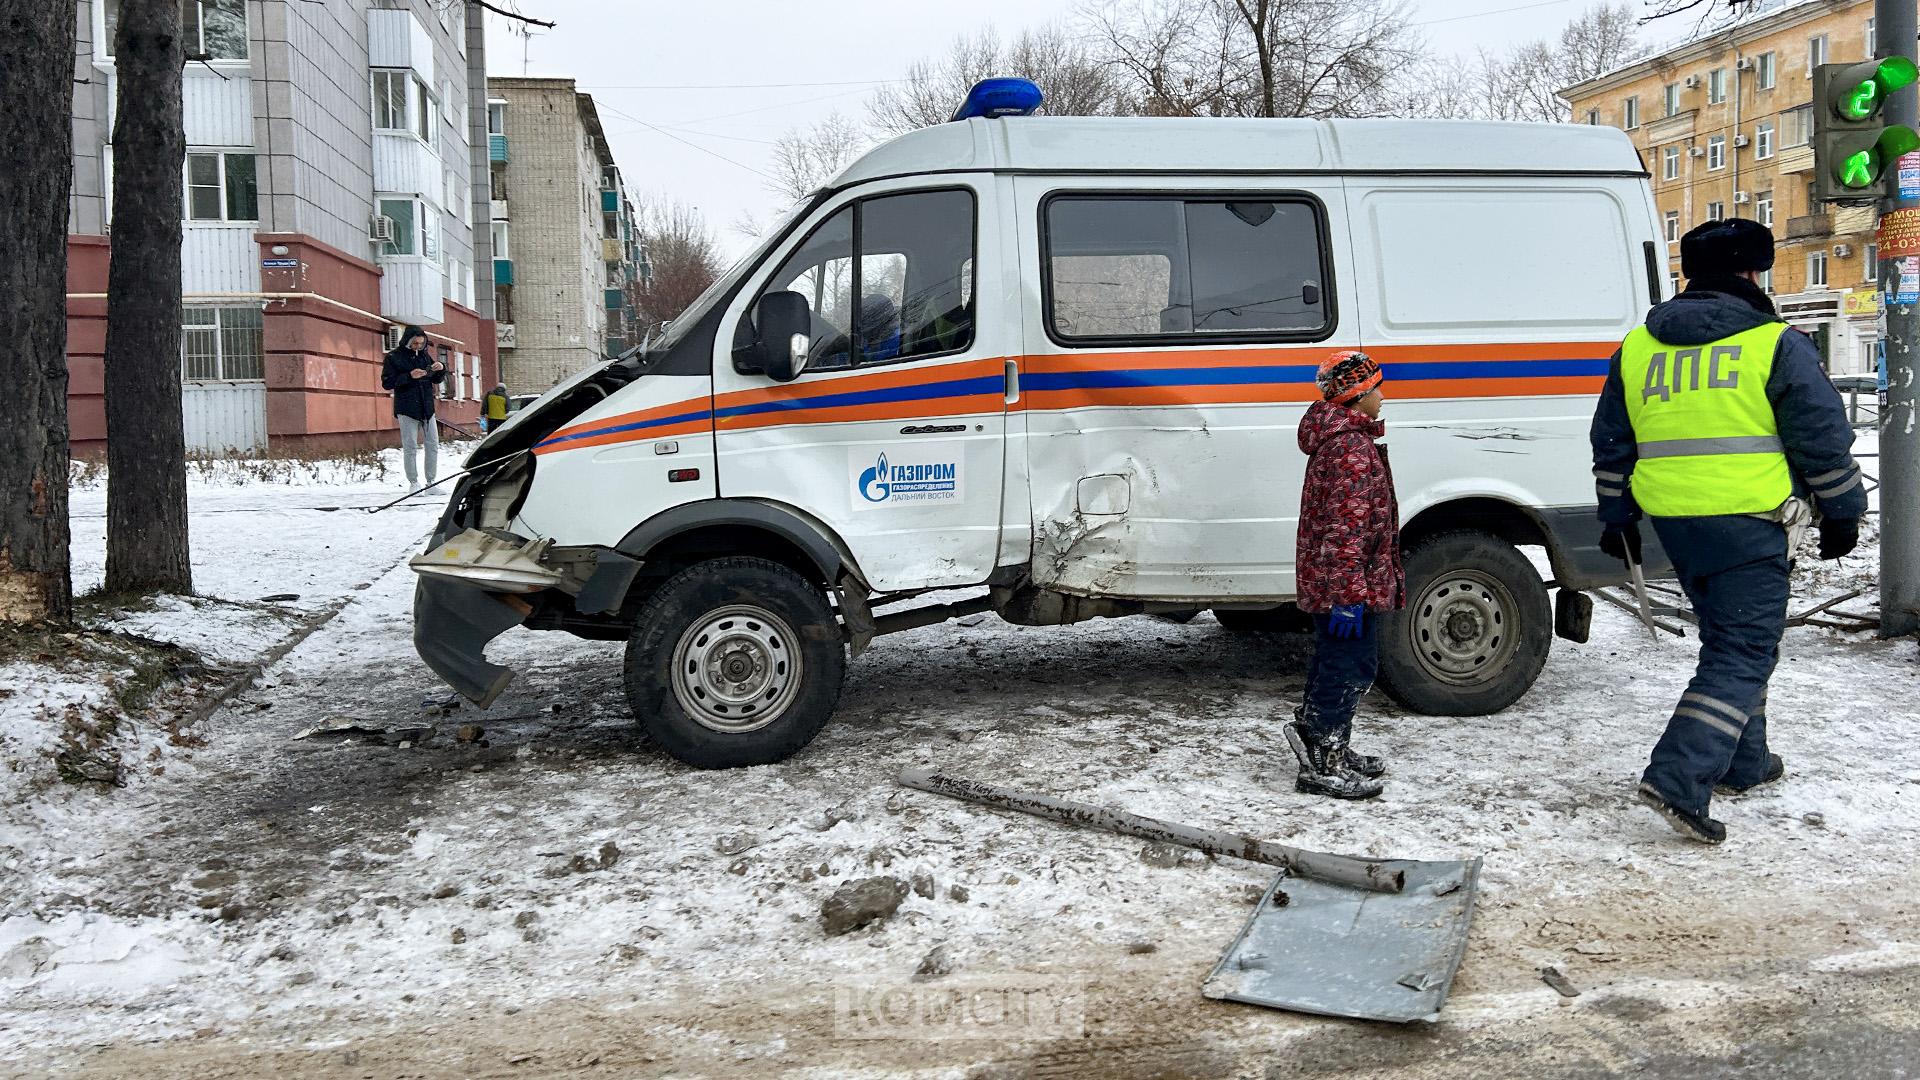 Машина Газпрома, столкнувшаяся с Хондой на Аллее Труда, ехала со спецсигналами на красный